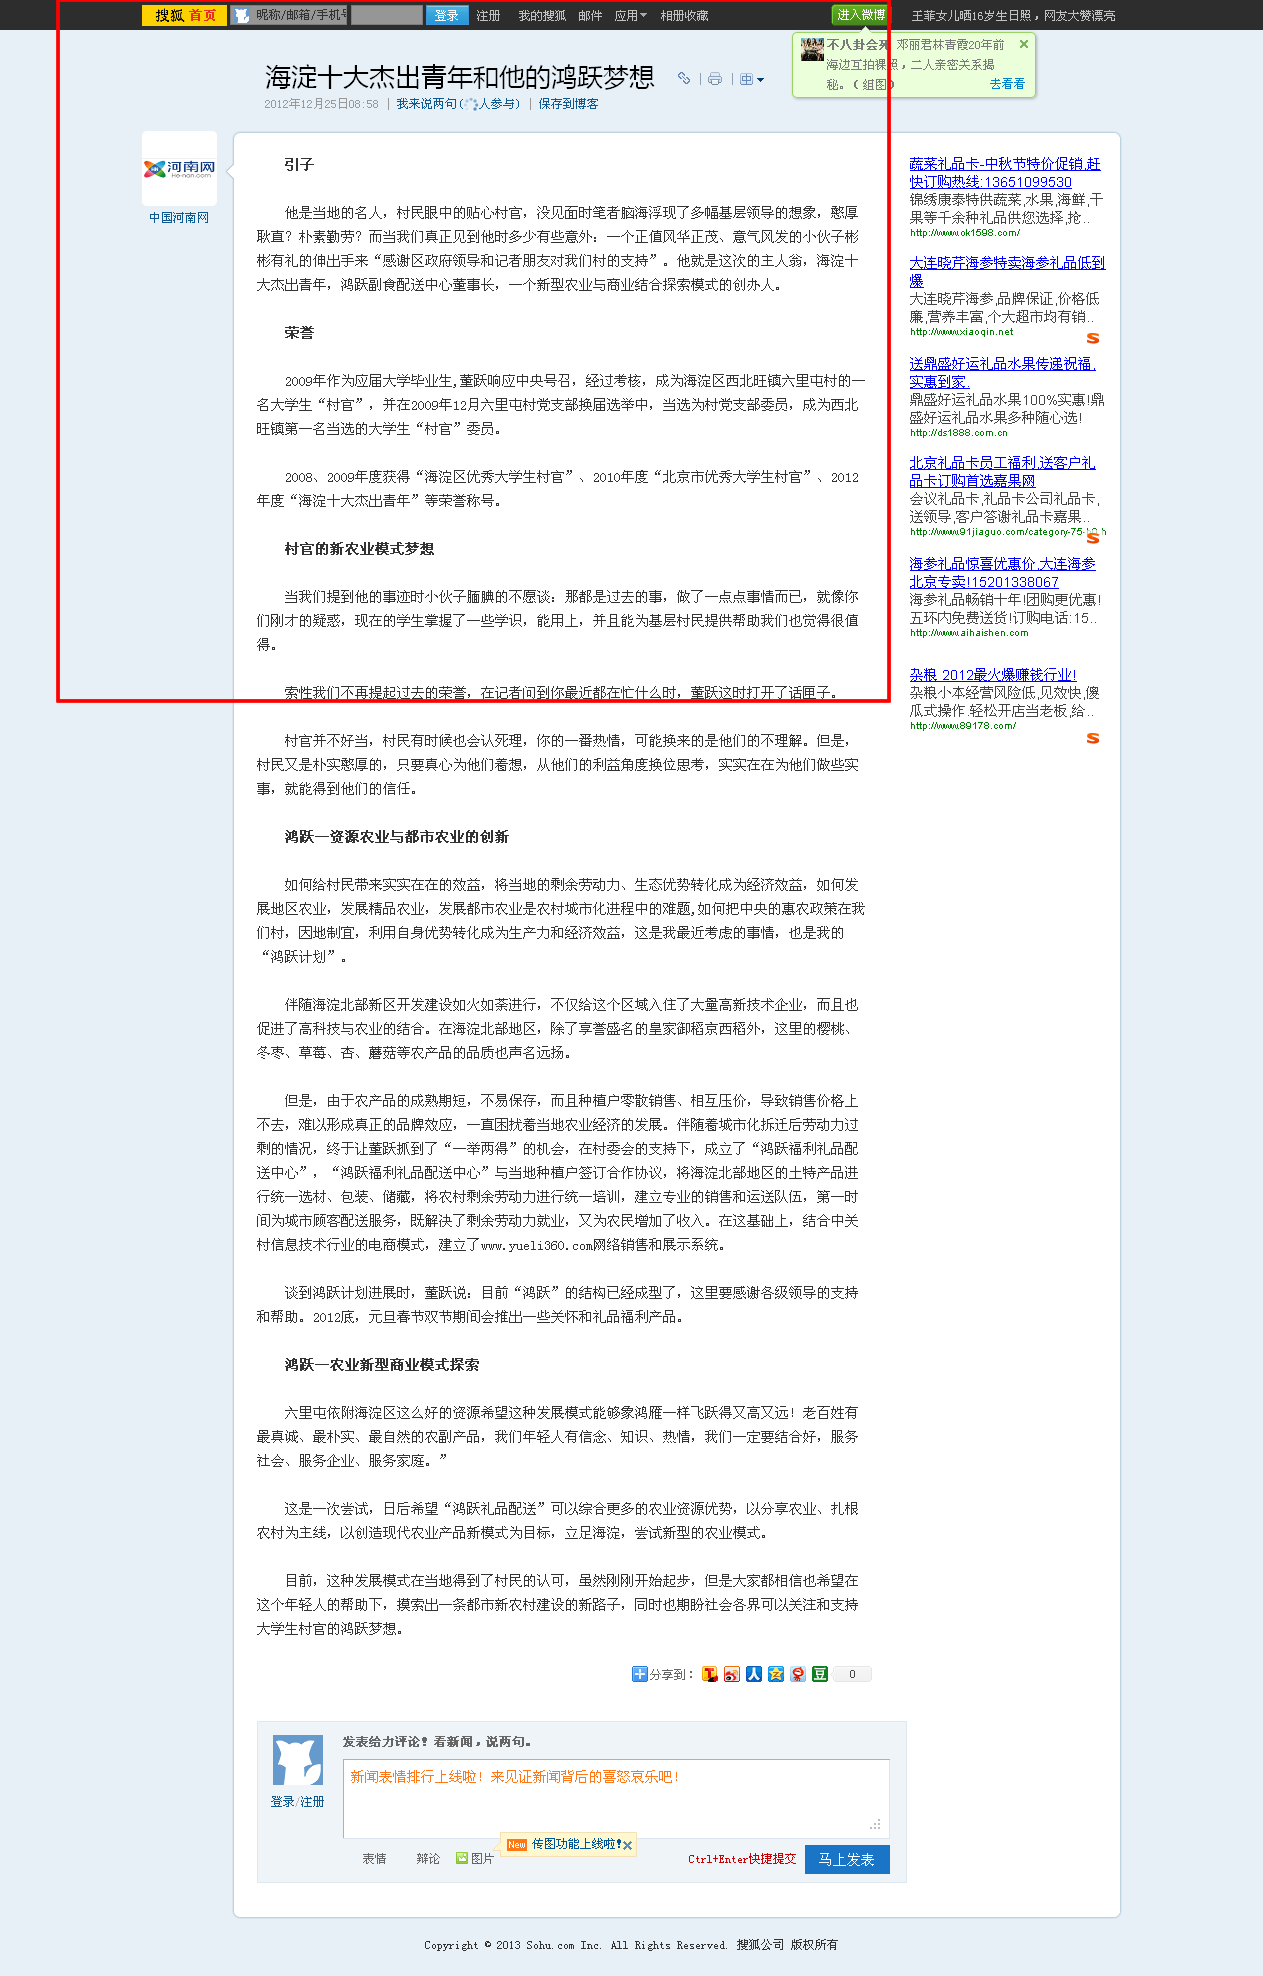 搜狐網對鴻躍福利配送中心的報導